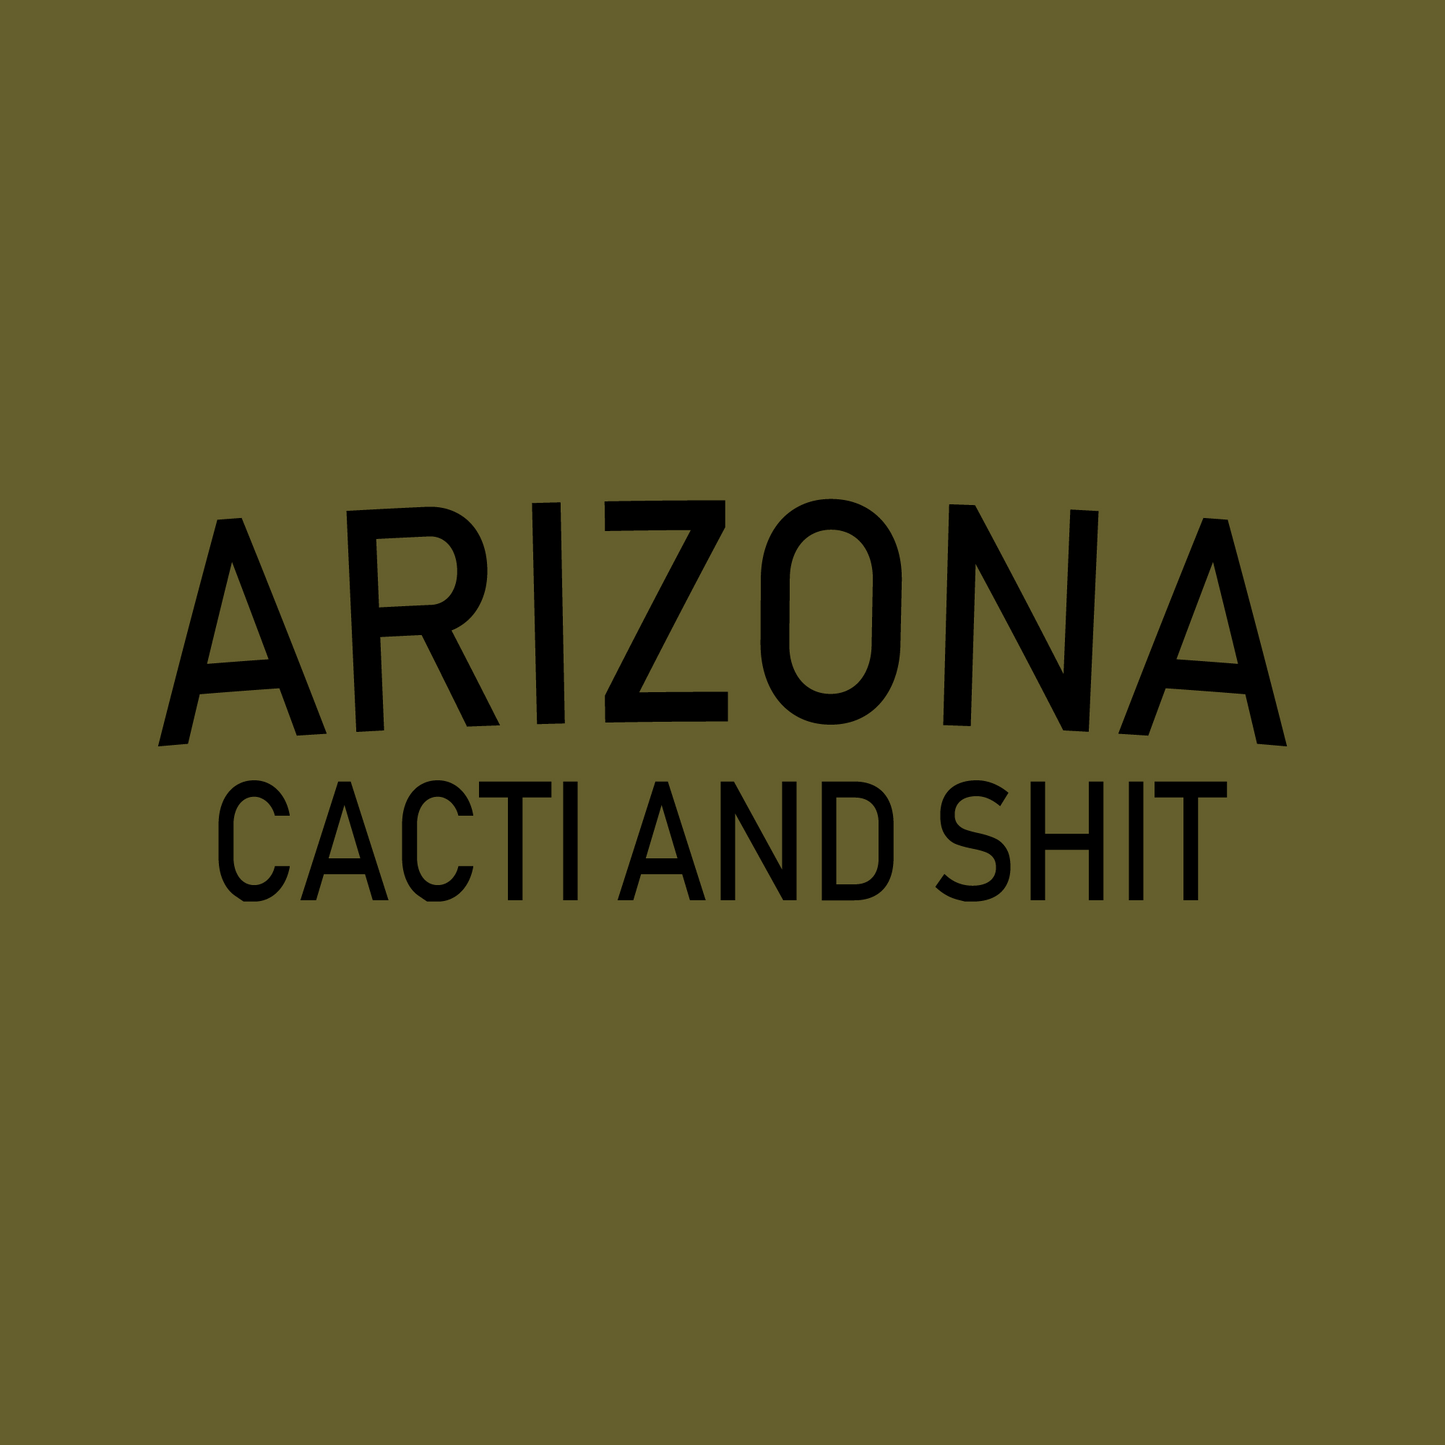 Arizona - Cacti and Shit